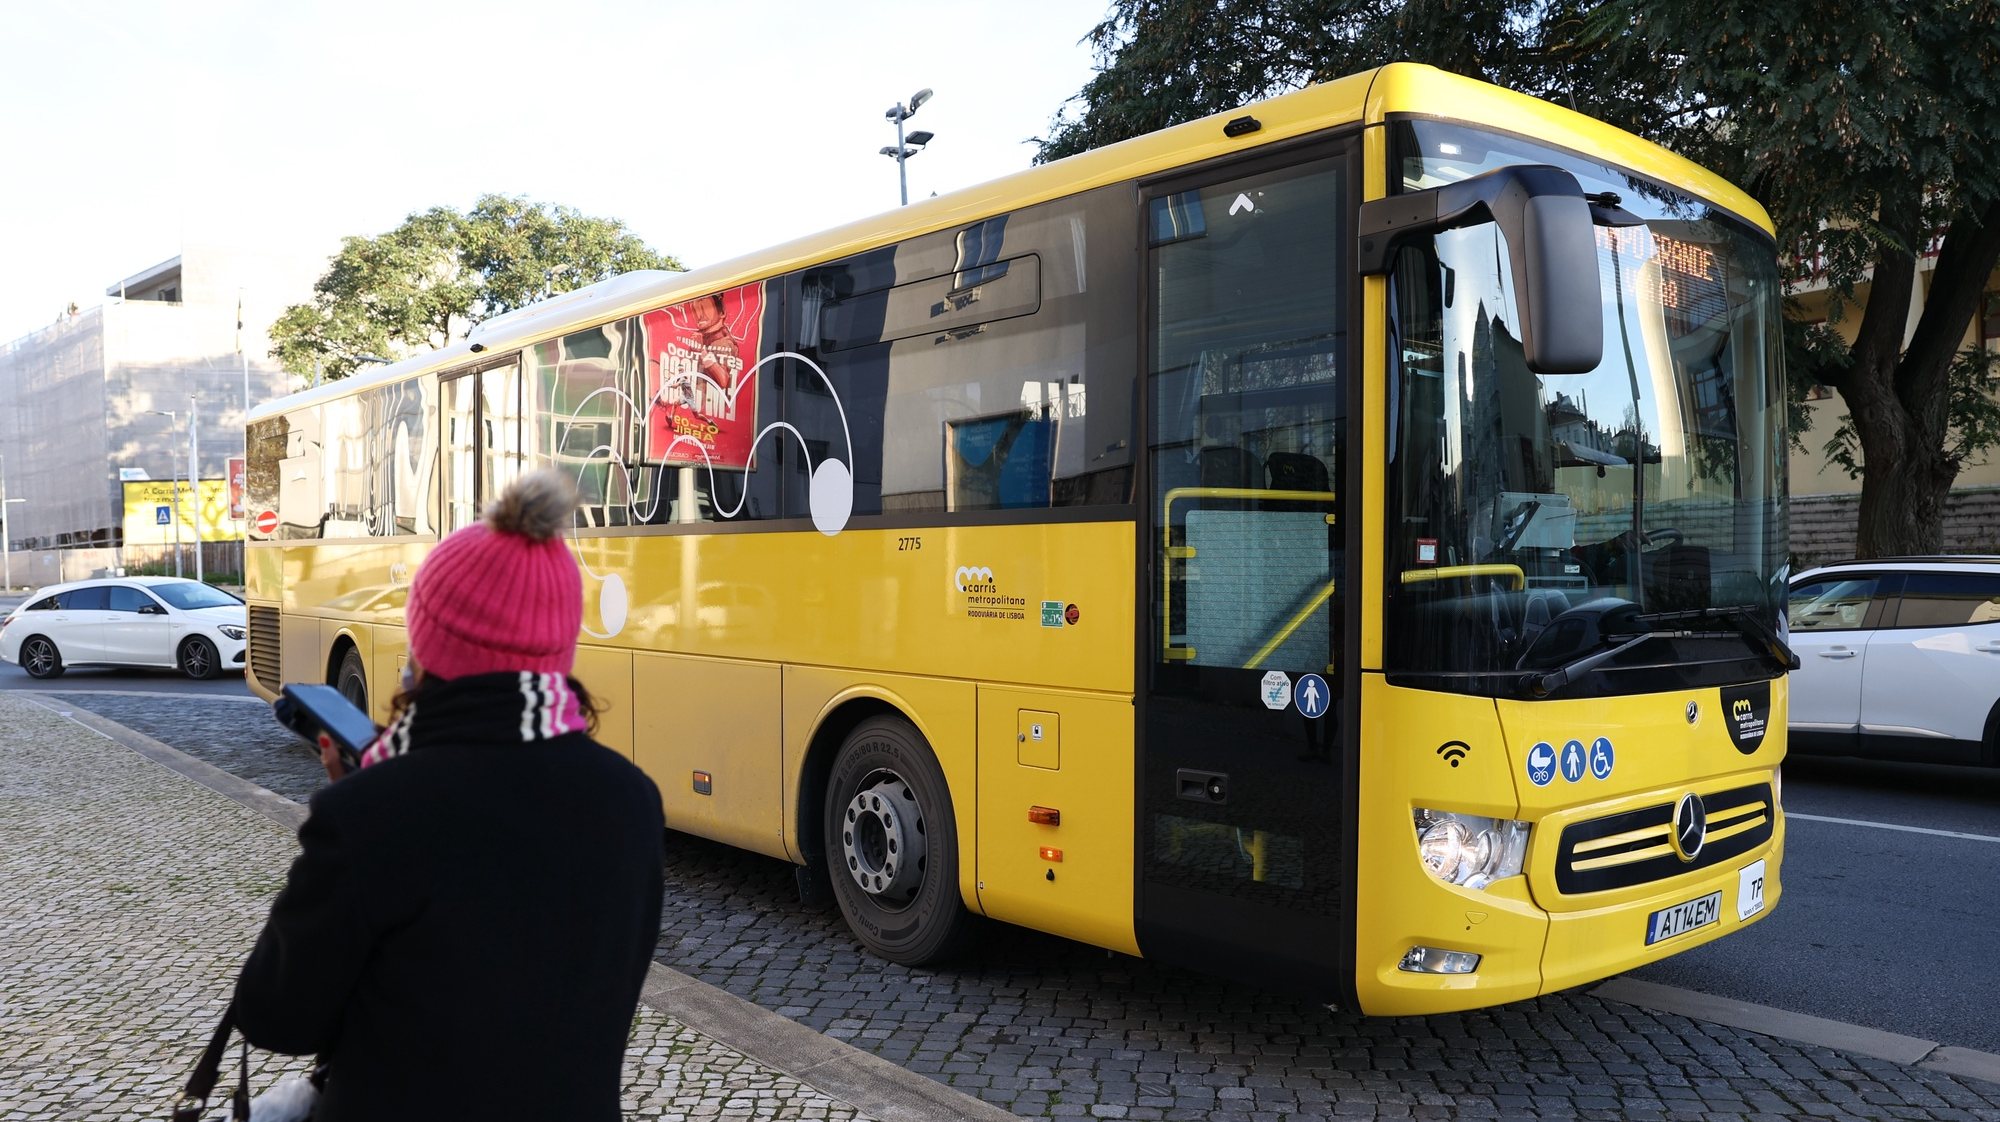 Quase duas semanas depois de a Carris Metropolitana começar, no distrito de Lisboa, os passageiros vêm mais autocarros em alguns locais, mas lamentam os atrasos constantes das carreiras e a falta de horários fora das horas de ponta, Loures, 12 de janeiro de 2023. ANTÓNIO COTRIM/LUSA